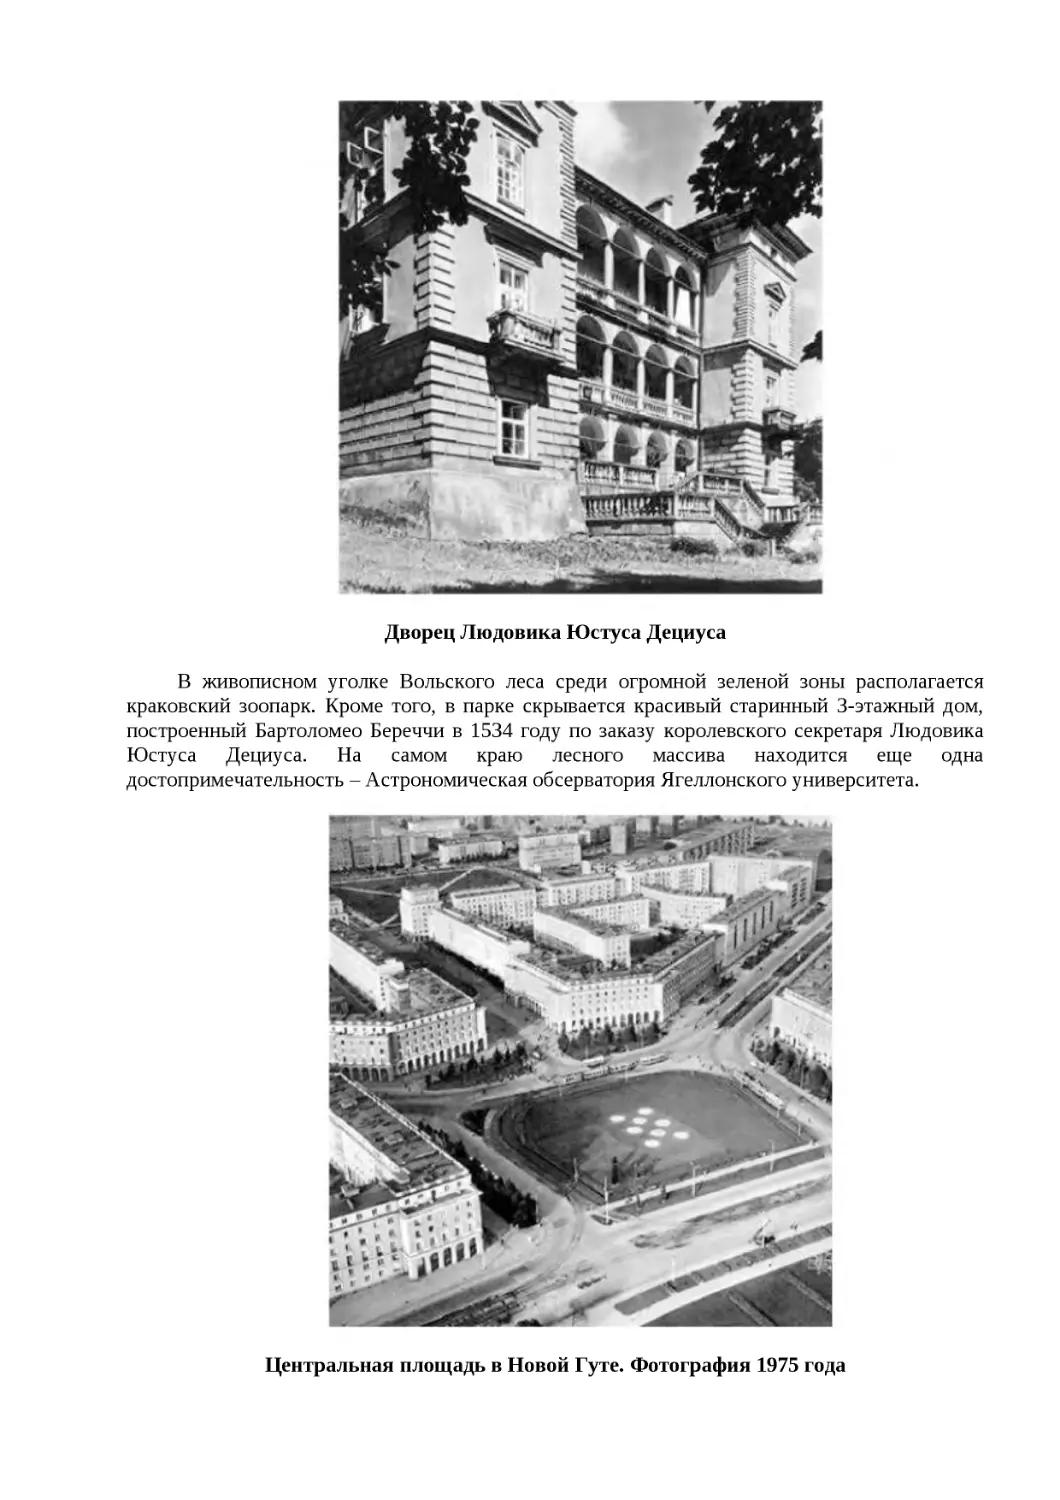 ﻿Дворец Людовика Юстуса Дециус
﻿Центральная площадь в Новой Гуте. Фотография 1975 год